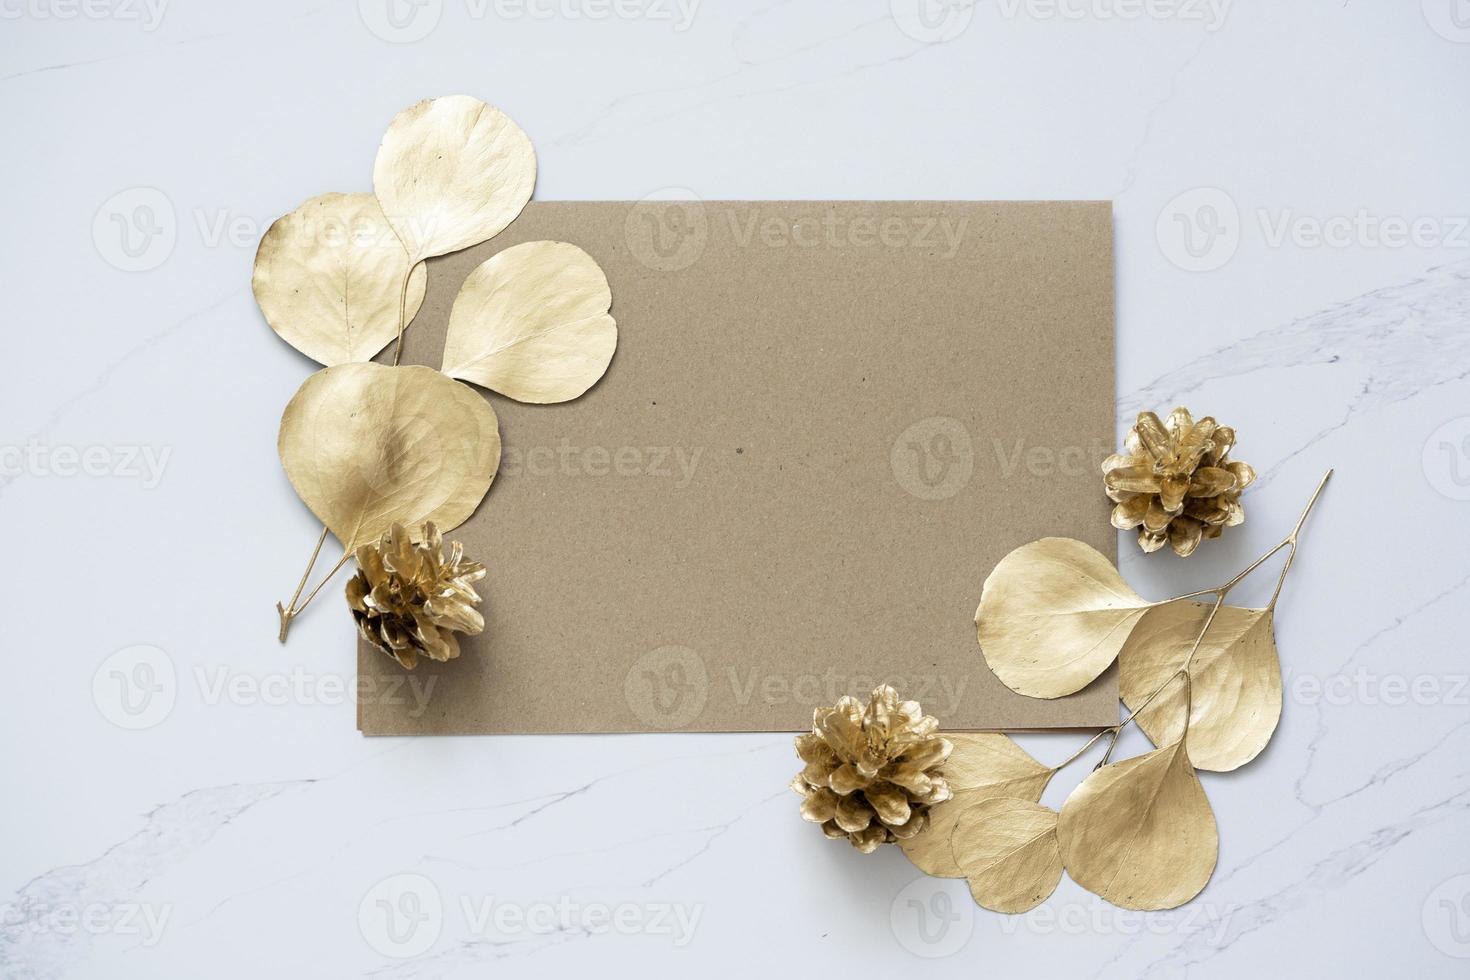 maquette pour une lettre ou une invitation de mariage avec des feuilles de branches d'eucalyptus. photo